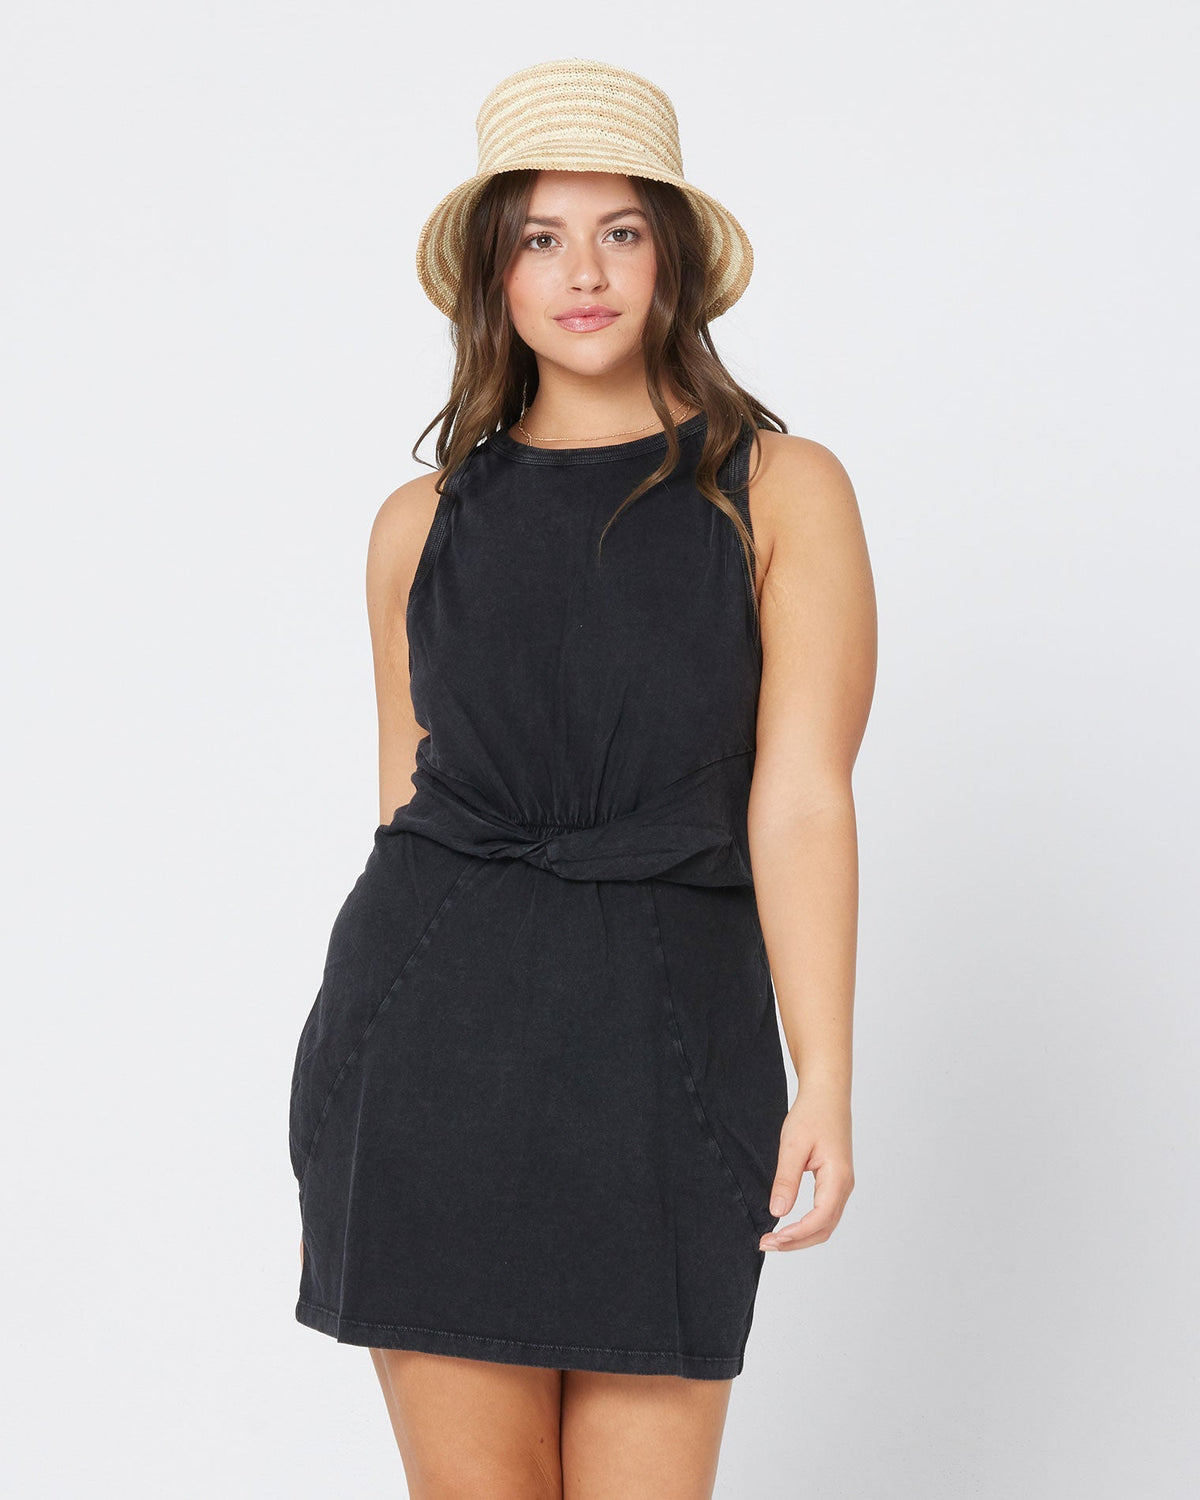 Seaview Dress - Black Black | Model: Kacie (size: XL)